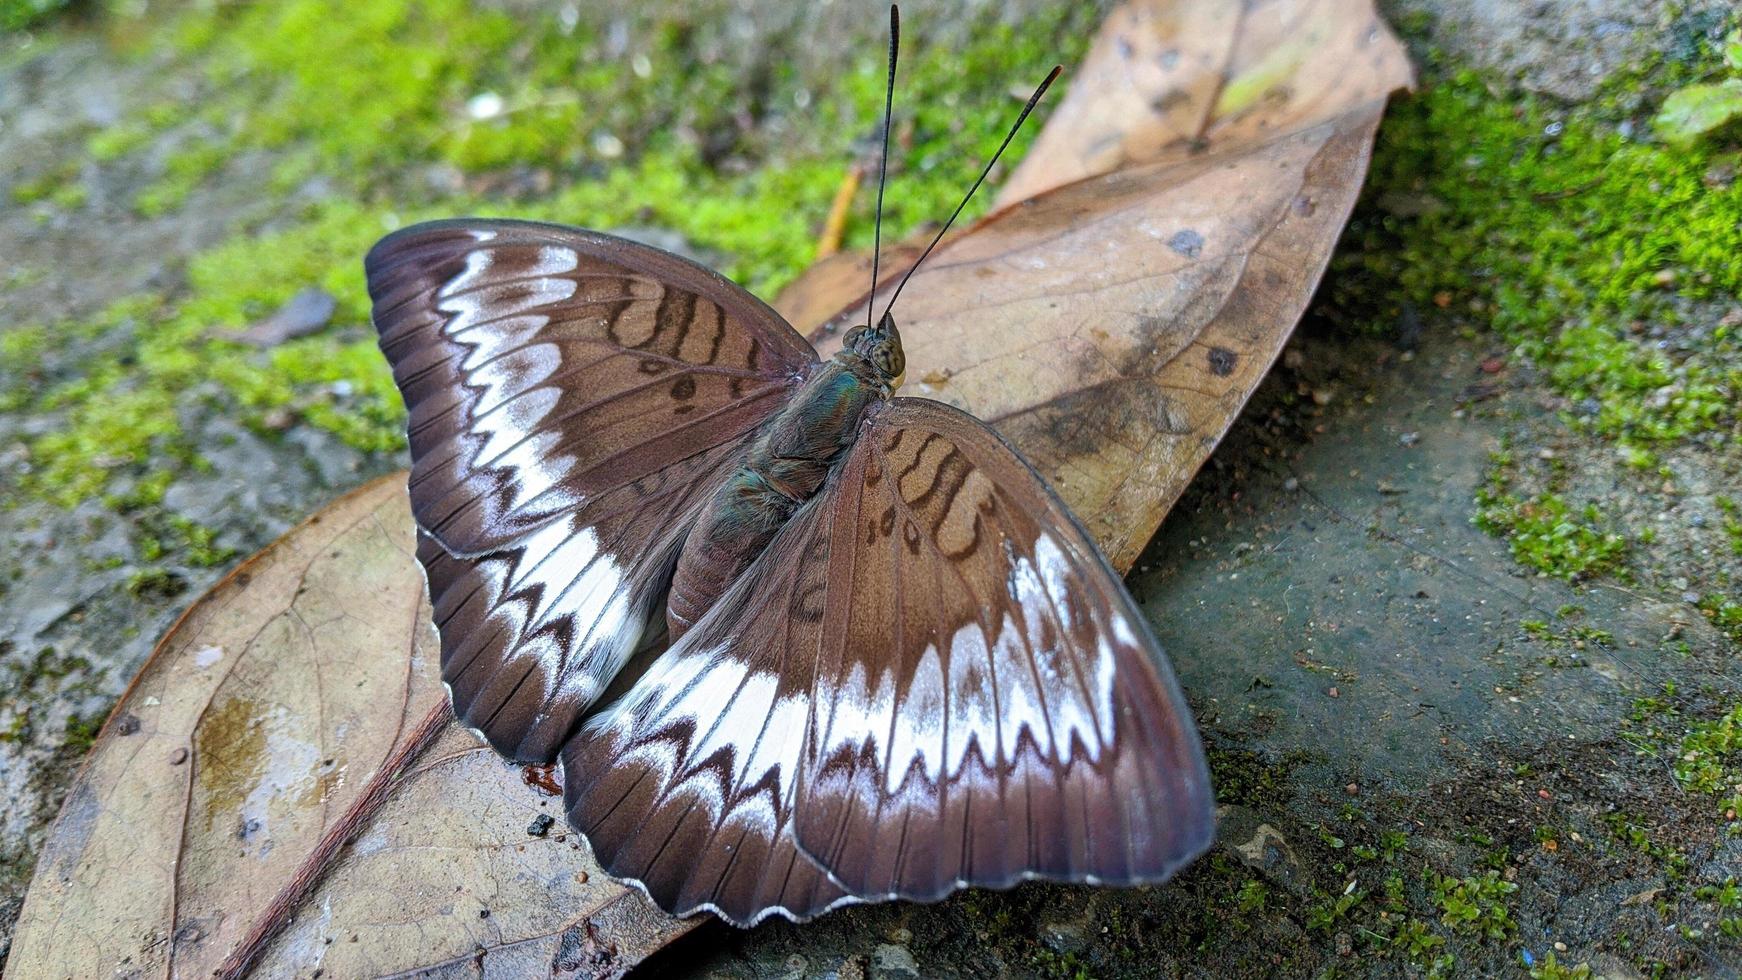 una mariposa marrón con un hermoso patrón blanco para un walpapper o adjunto a un artículo sobre la naturaleza. foto